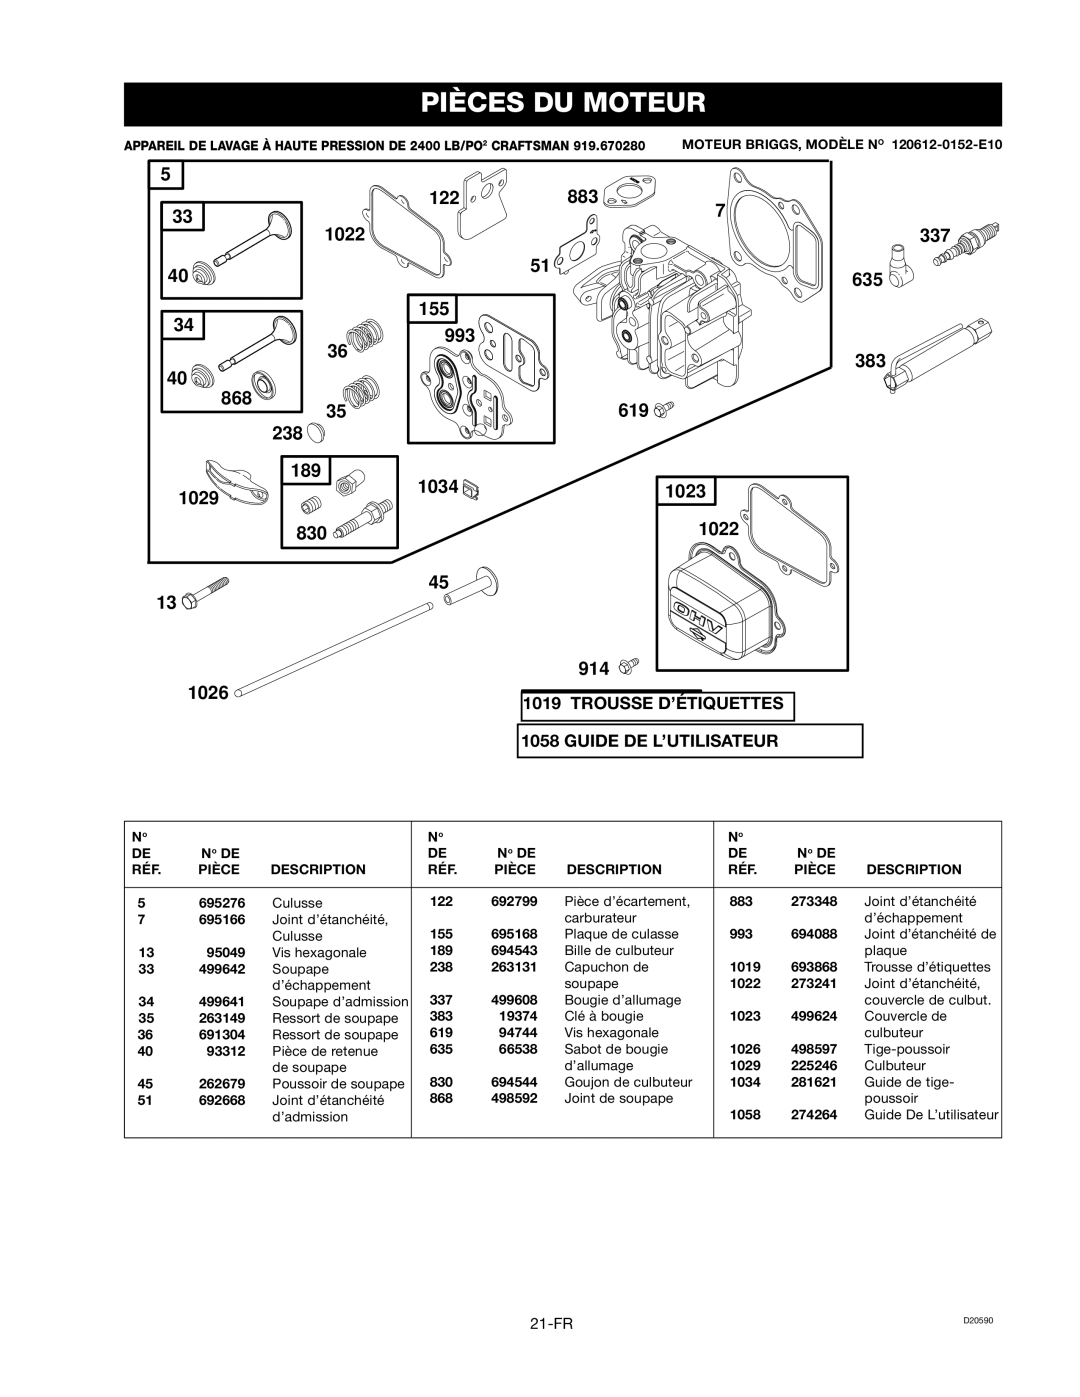 Craftsman D20590, 919.670280 owner manual Pièces Du Moteur, Trousse D’Étiquettes, Guide De L’Utilisateur, 21-FR 